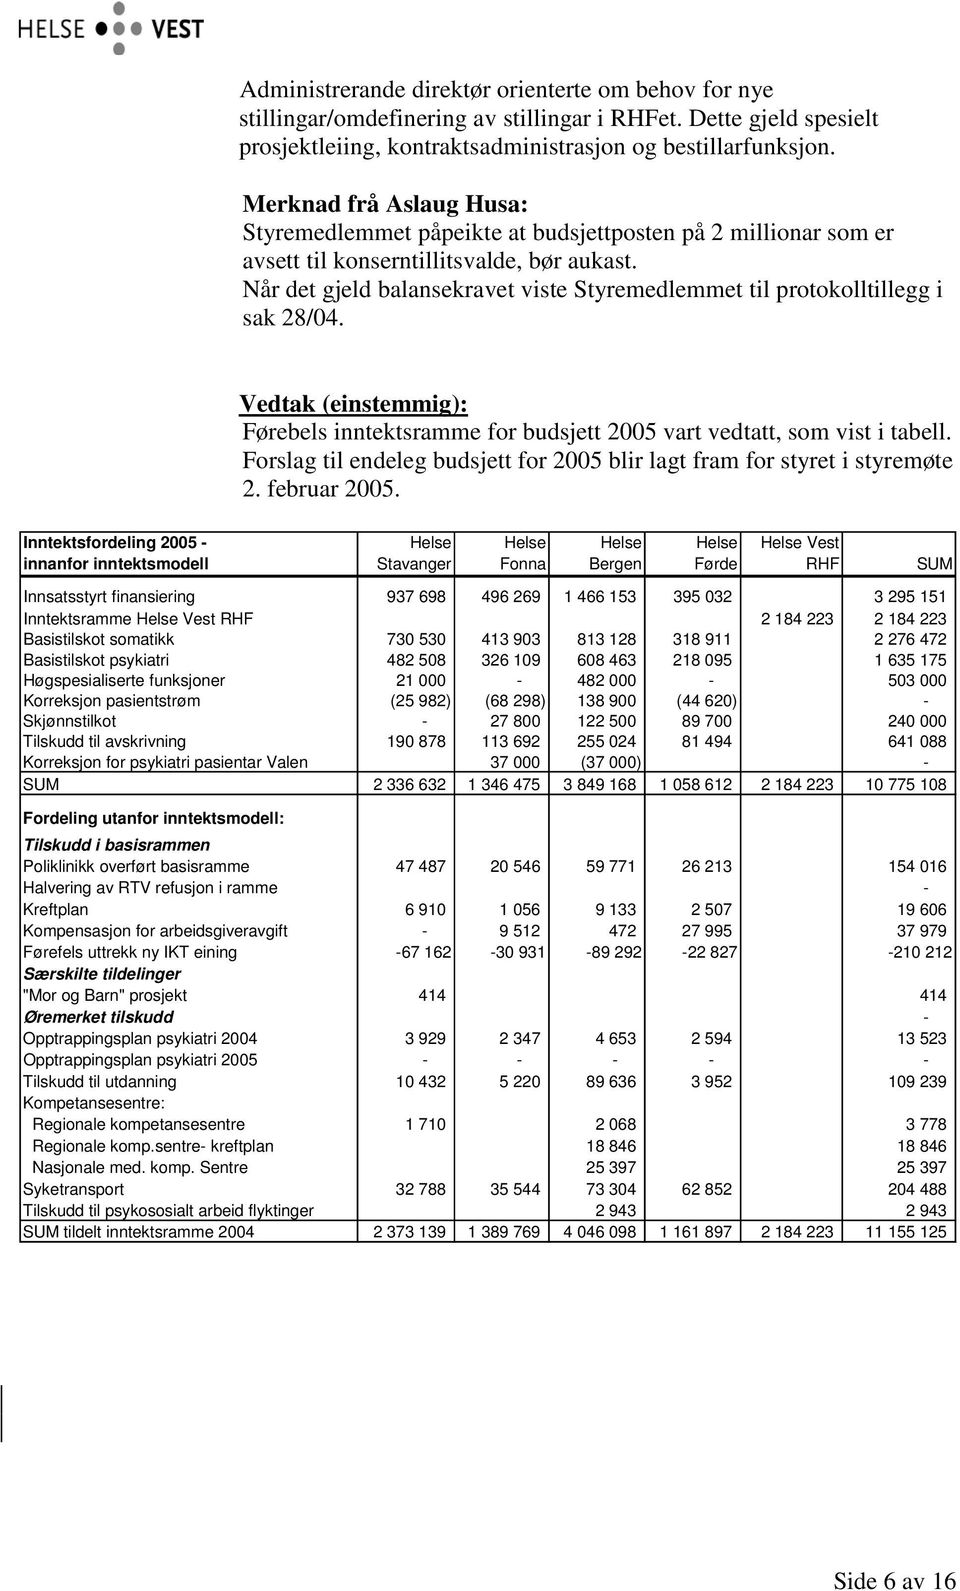 Når det gjeld balansekravet viste Styremedlemmet til protokolltillegg i sak 28/04. Førebels inntektsramme for budsjett 2005 vart vedtatt, som vist i tabell.